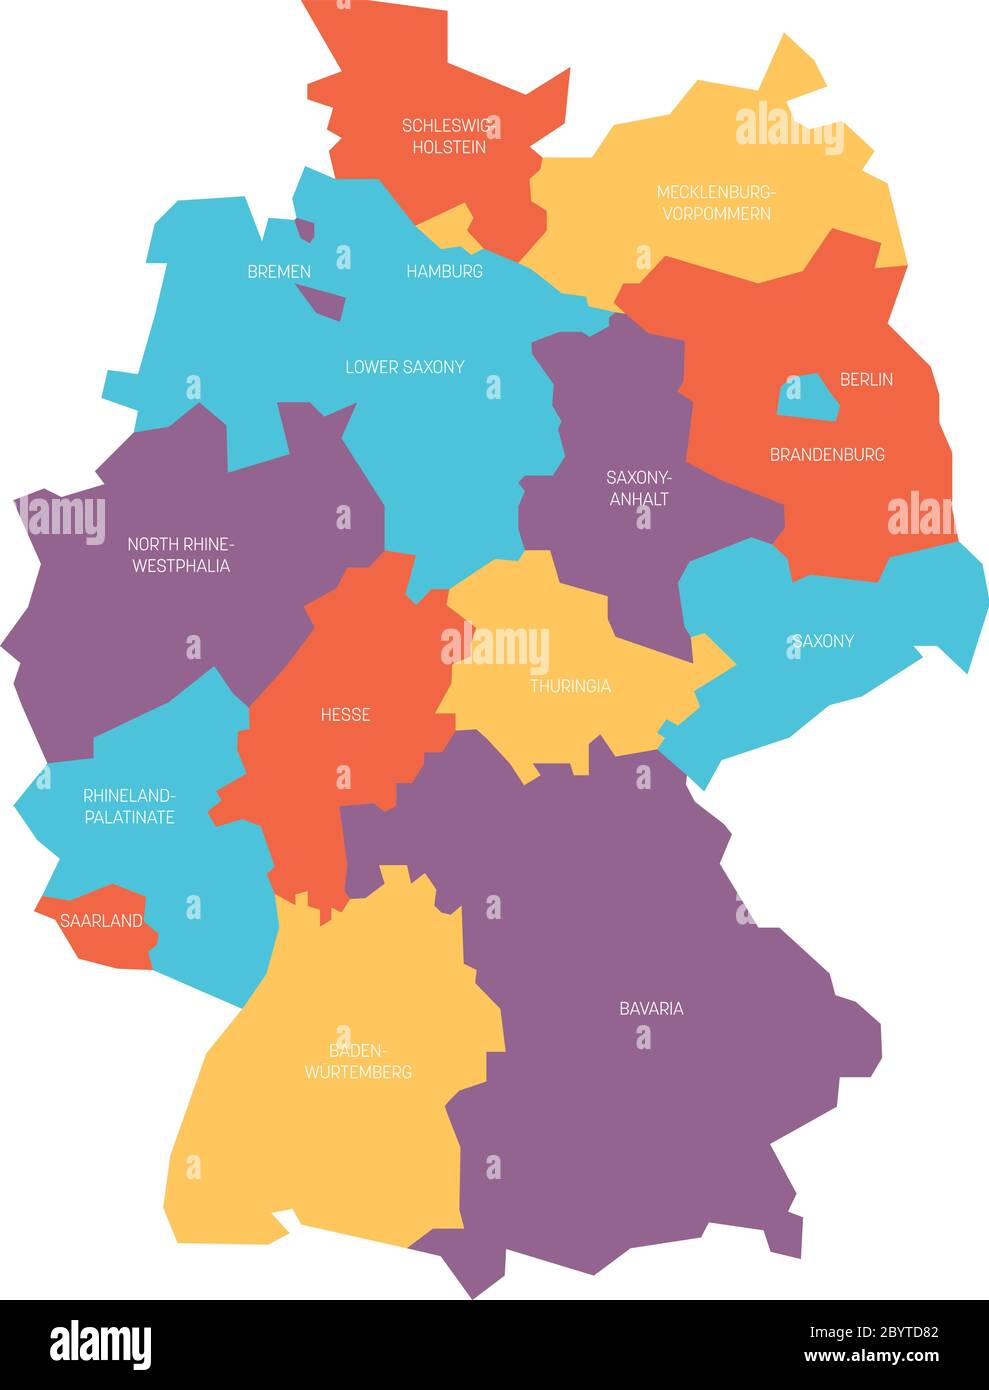 Karte von Deutschland aufgeteilt in 13 Bundesländer und 3 Stadtstaaten - Berlin, Bremen und Hamburg, Europa. Einfache flache Vektorkarte in vier Farben mit weißen Etiketten. Stock Vektor